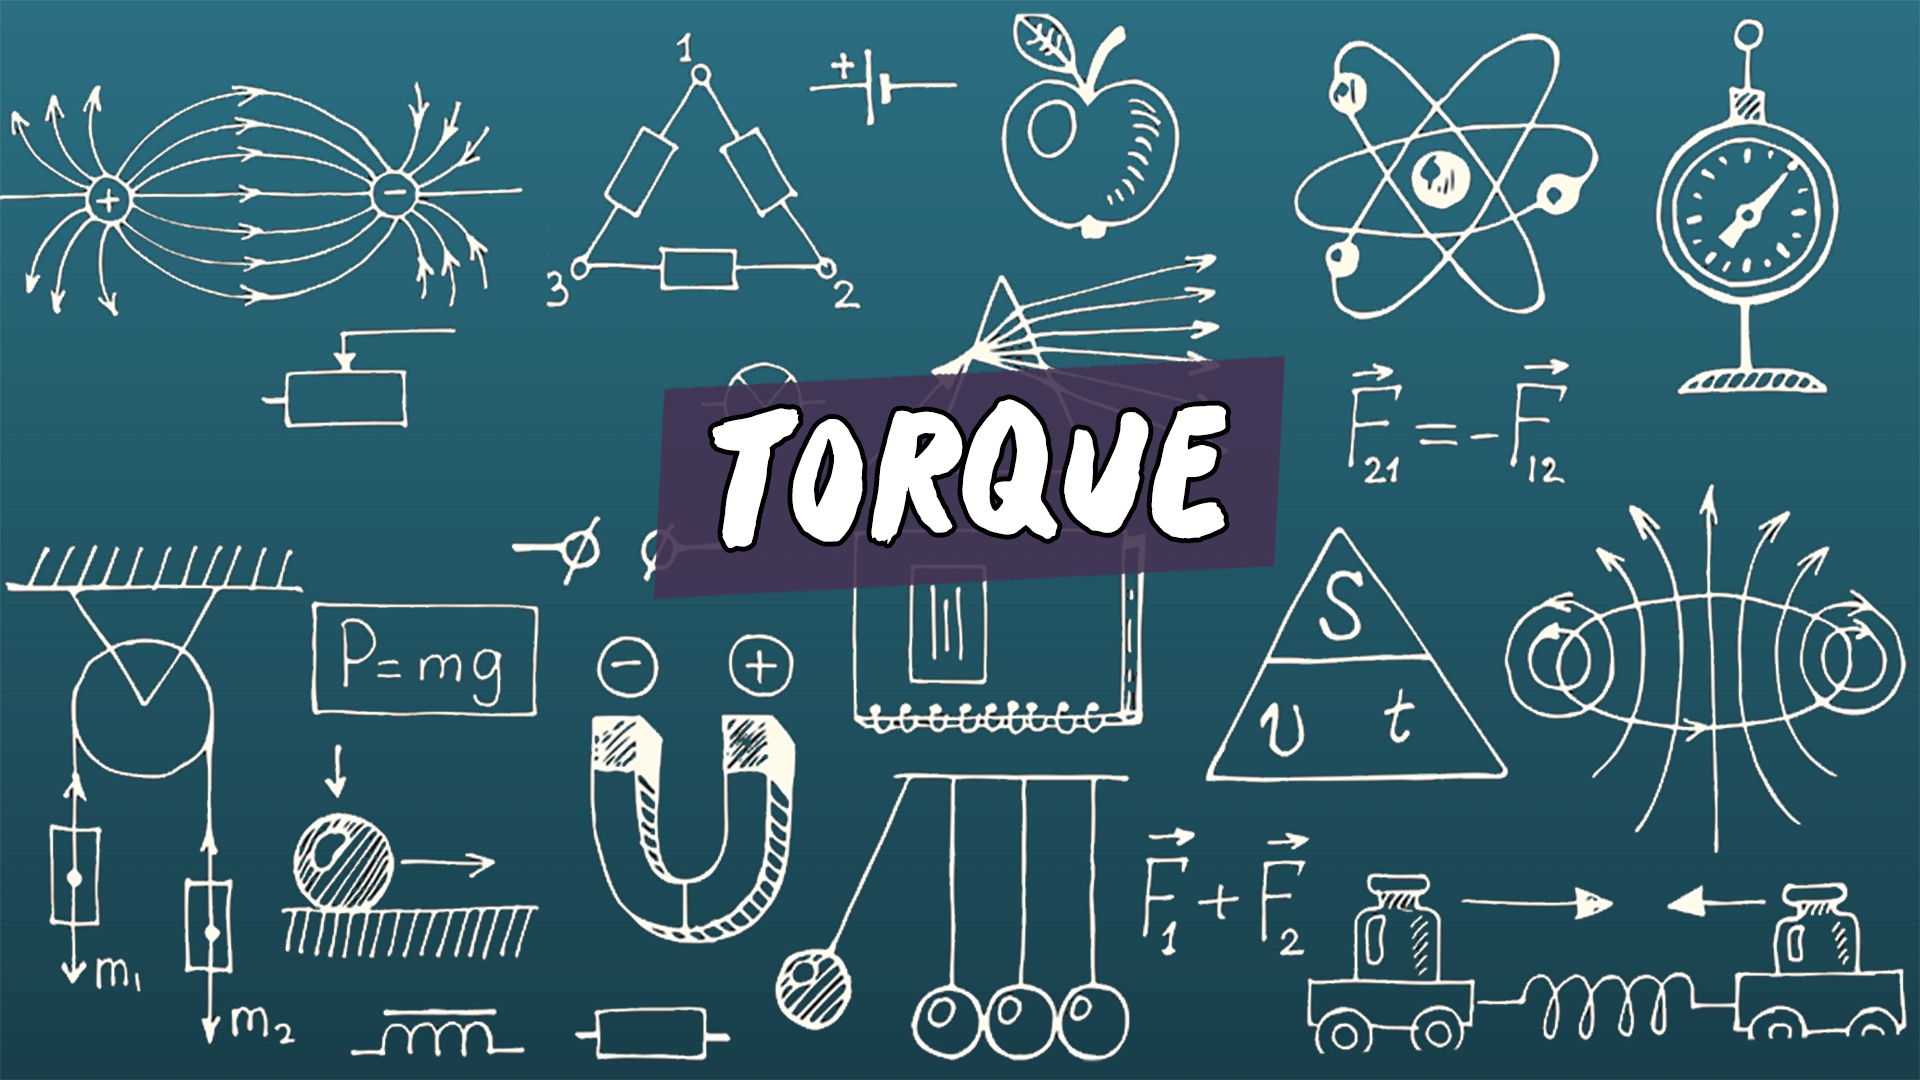 "Torque" escrito sobre ilustração de diversos símbolos matemáticos